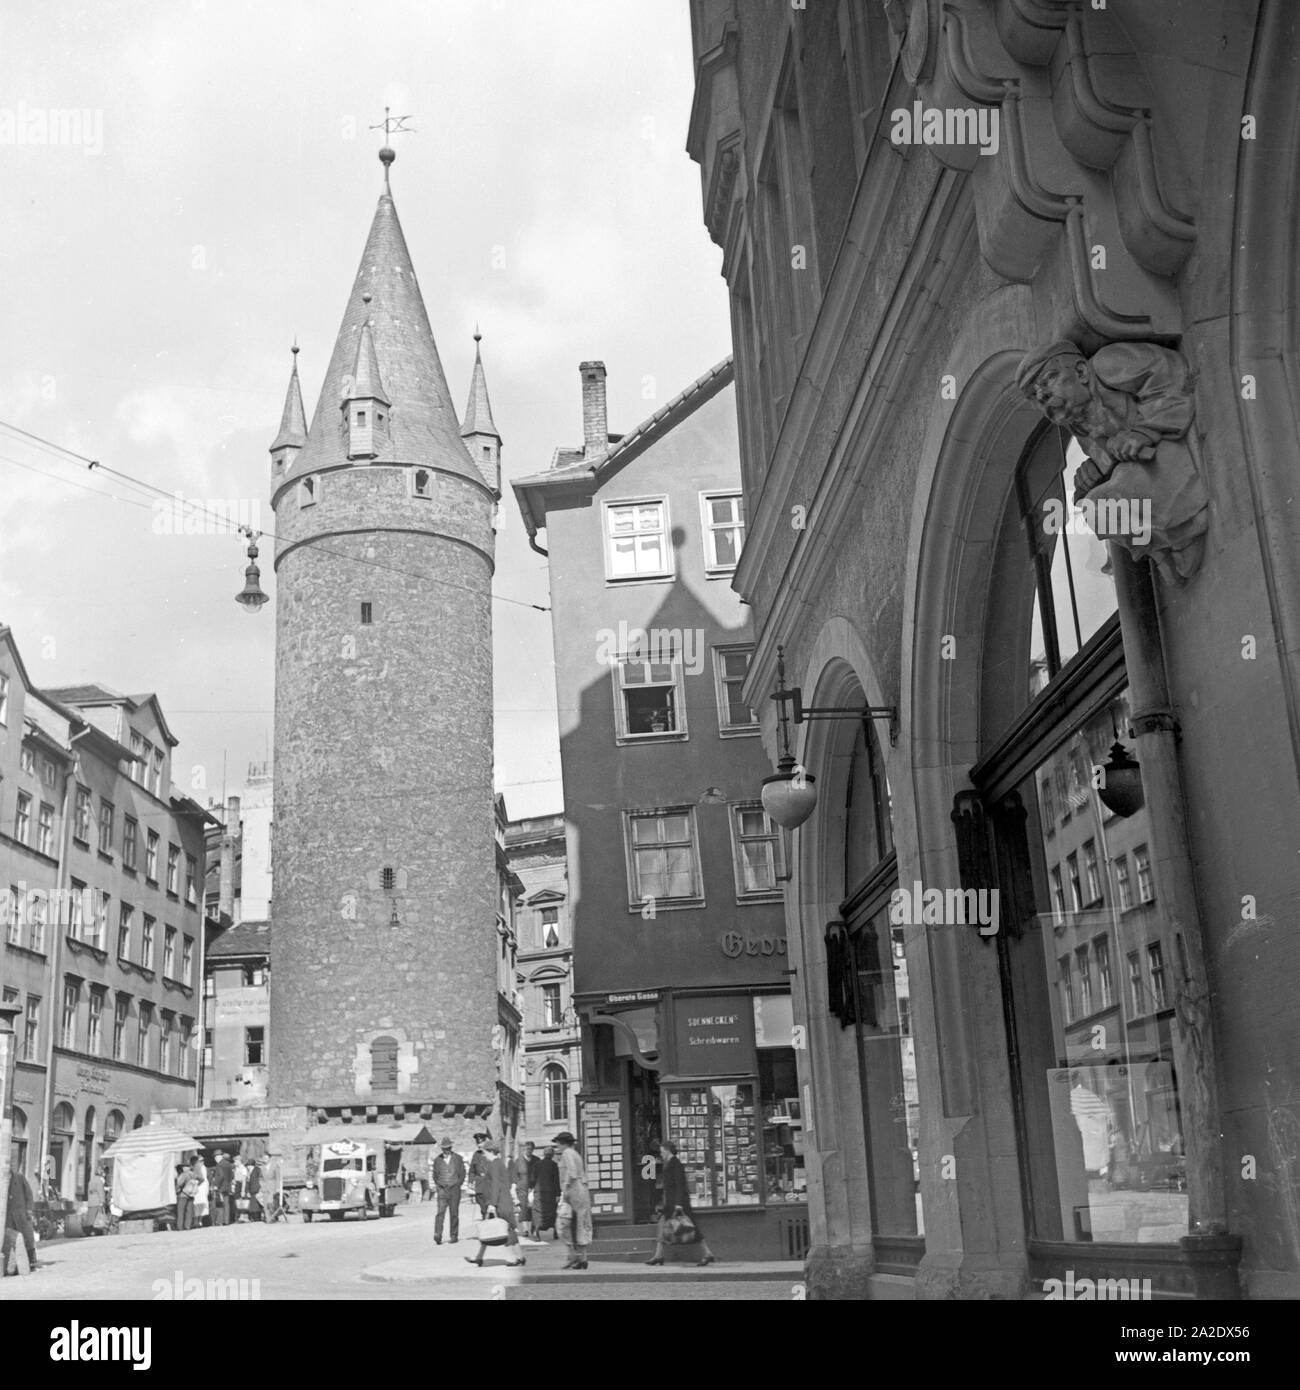 Der Druselturm in der Oberste Gasse in der Innenstadt von Kassel, Deutschland 1930er Jahre. Torre Druselturm presso la vecchia città di Kassel, Germania 1930s. Foto Stock